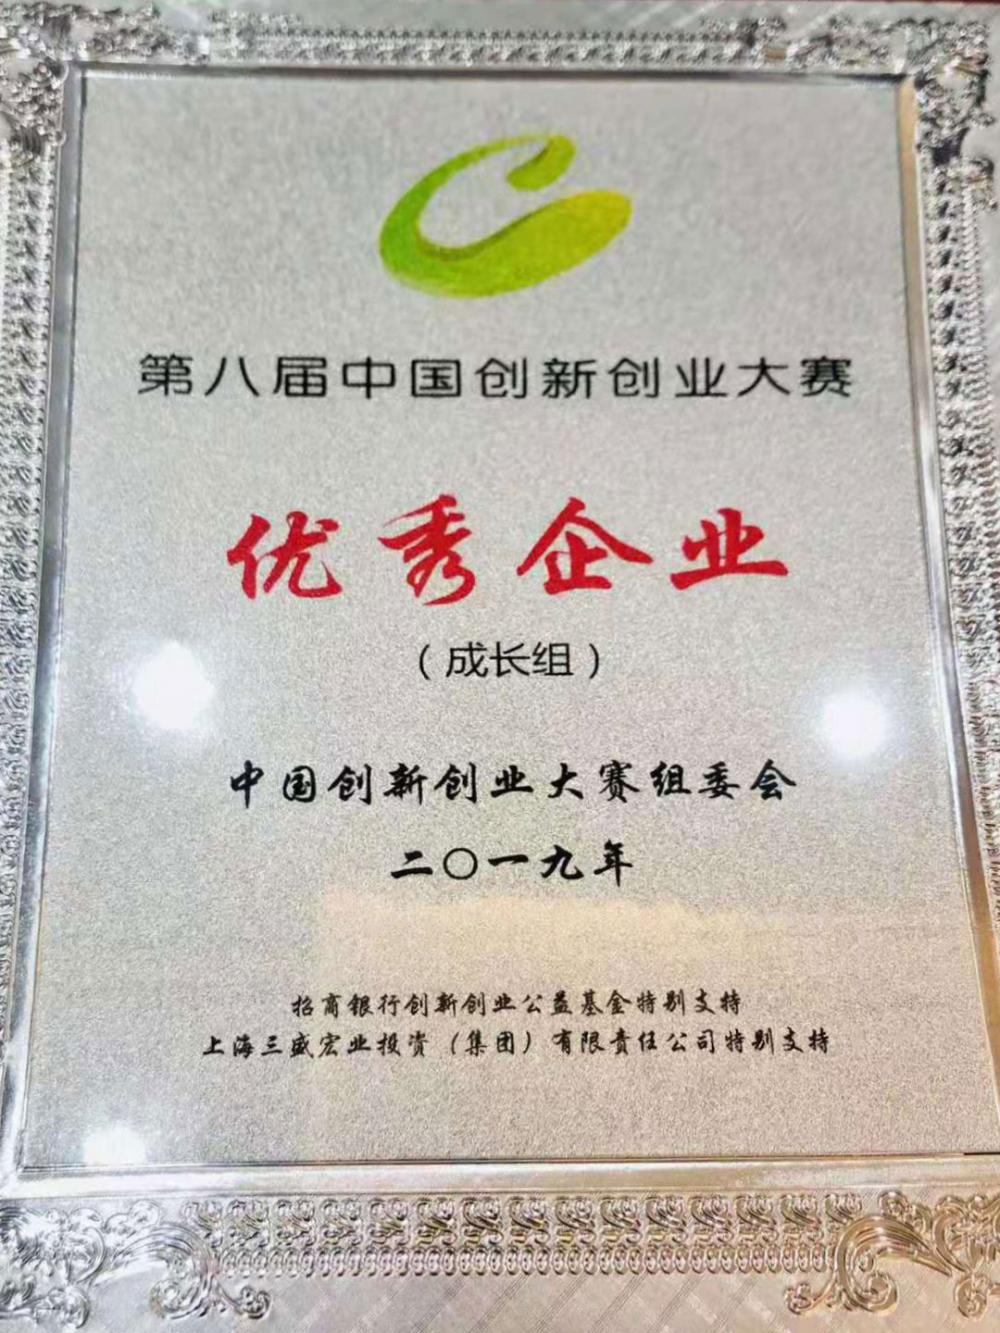 333祝贺威斯腾生物在第八届中国创新创业大赛全国总决赛中荣获“优秀企业”表彰.jpg